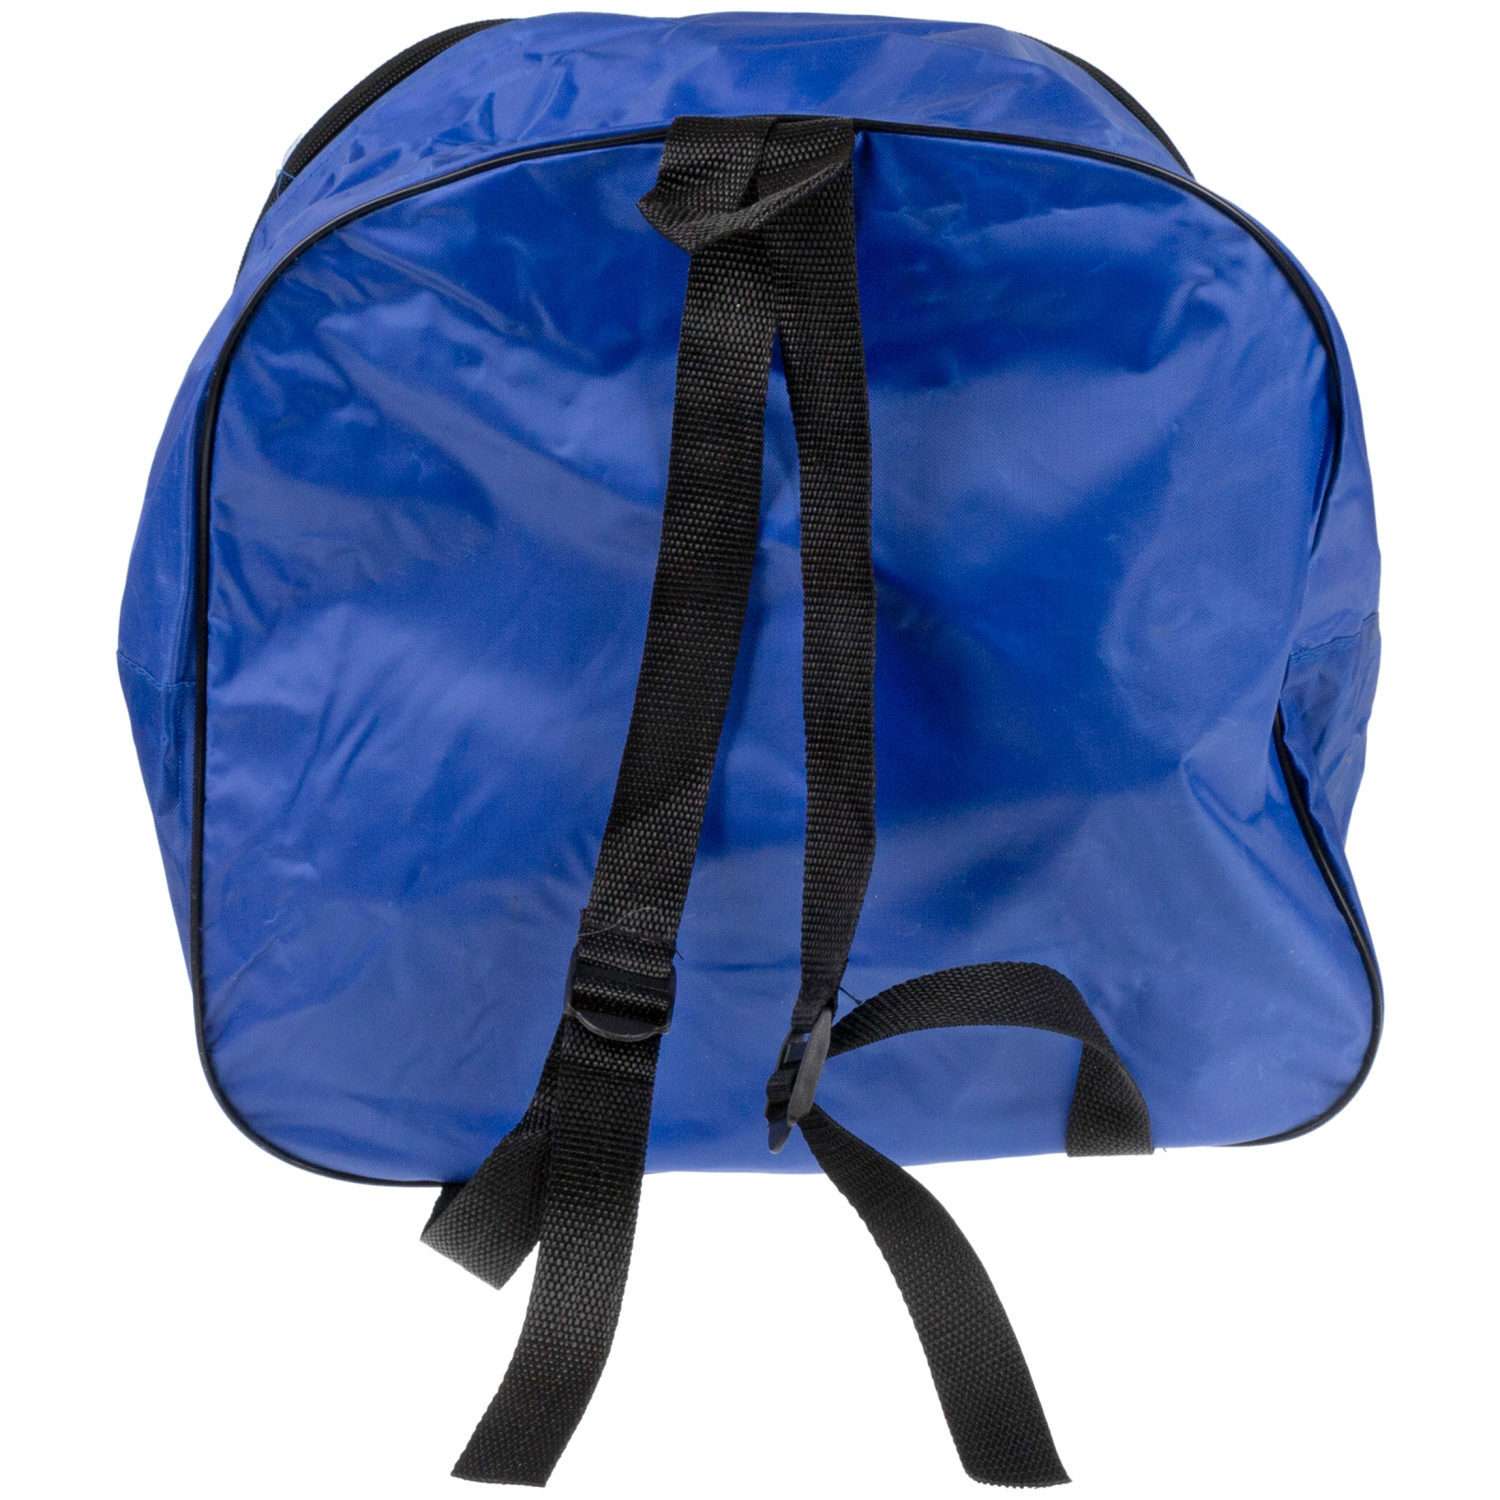 Ролики Navigator детские раздвижные 30 - 33 размер с защитой и шлемом синий - фото 22